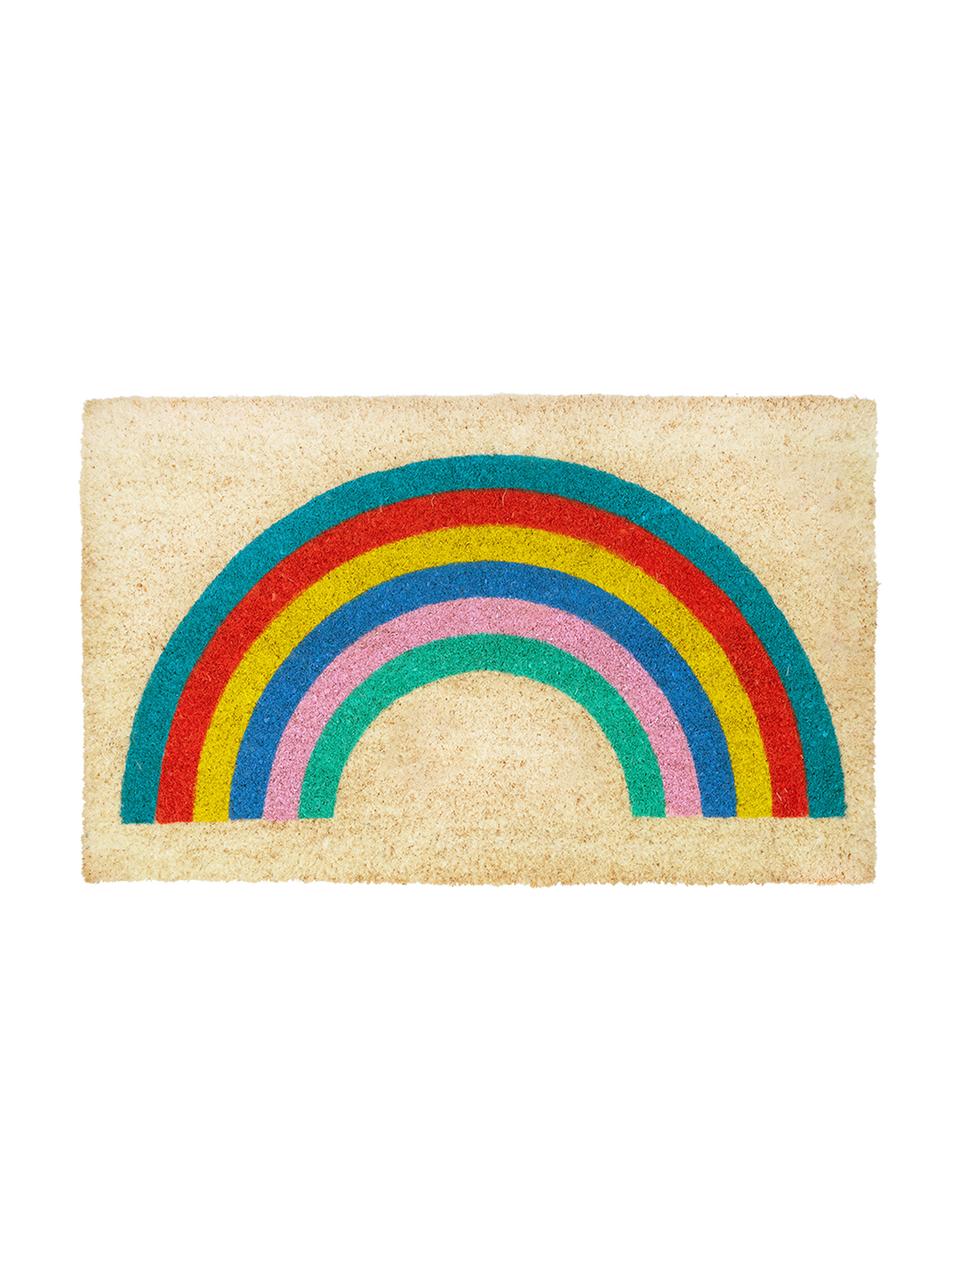 Zerbino in cocco con motivo arcobaleno Rainbow, Beige, multicolore, Larg. 45 x Lung. 75 cm